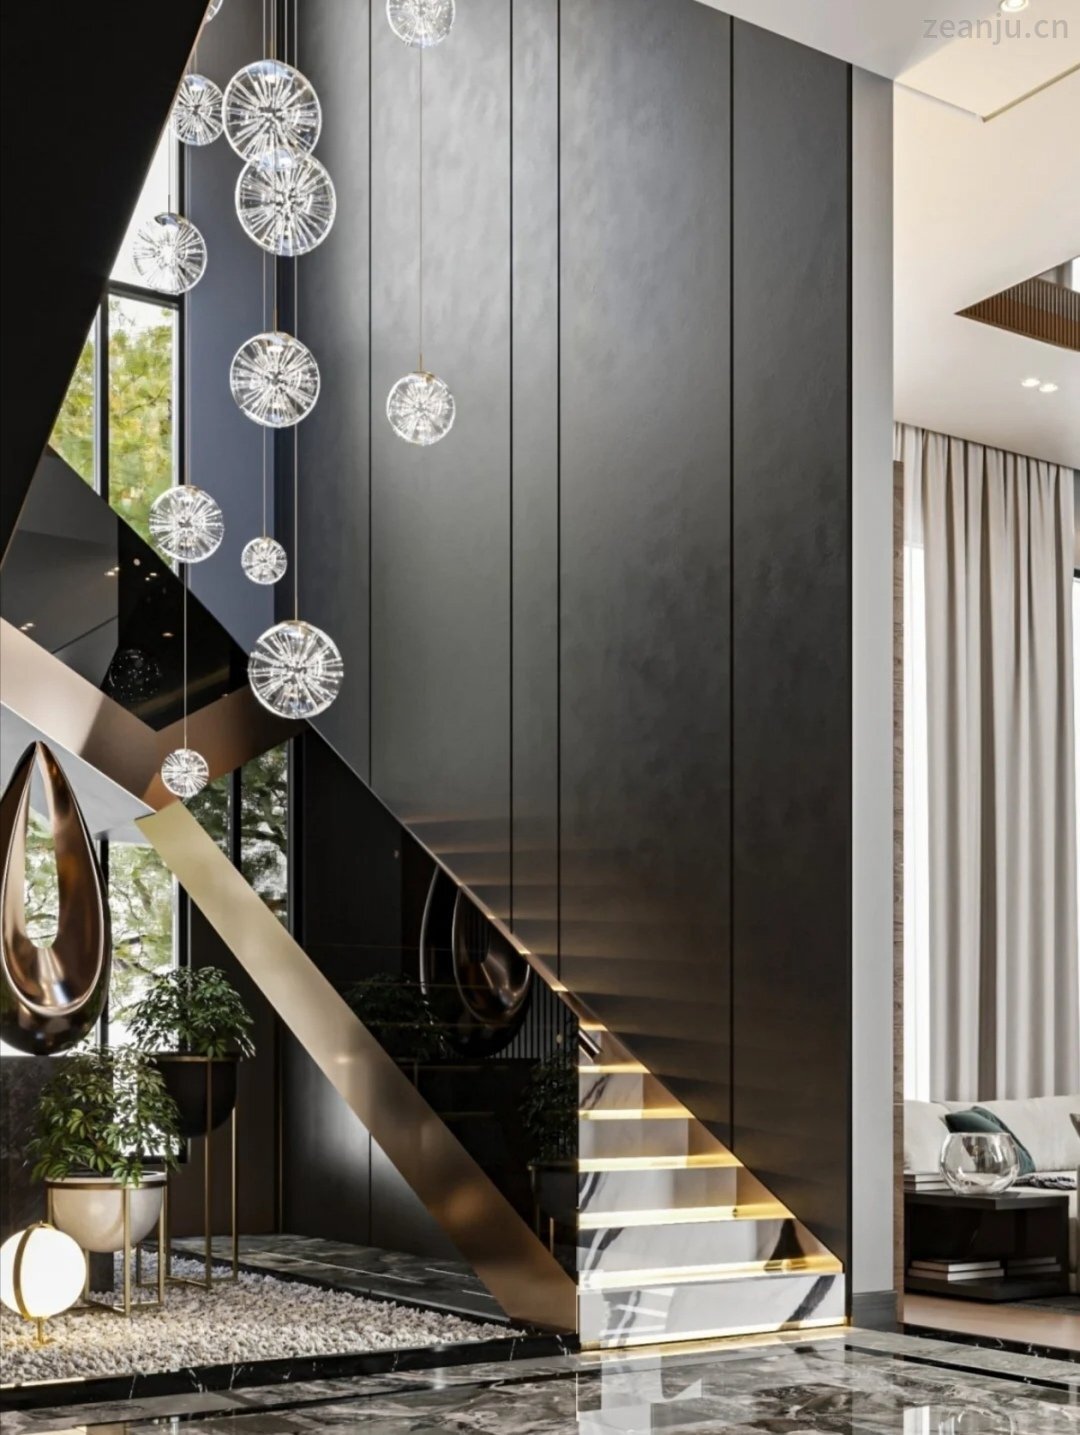 不銹鋼扶梯、不銹鋼線條點綴別墅裝飾高級美